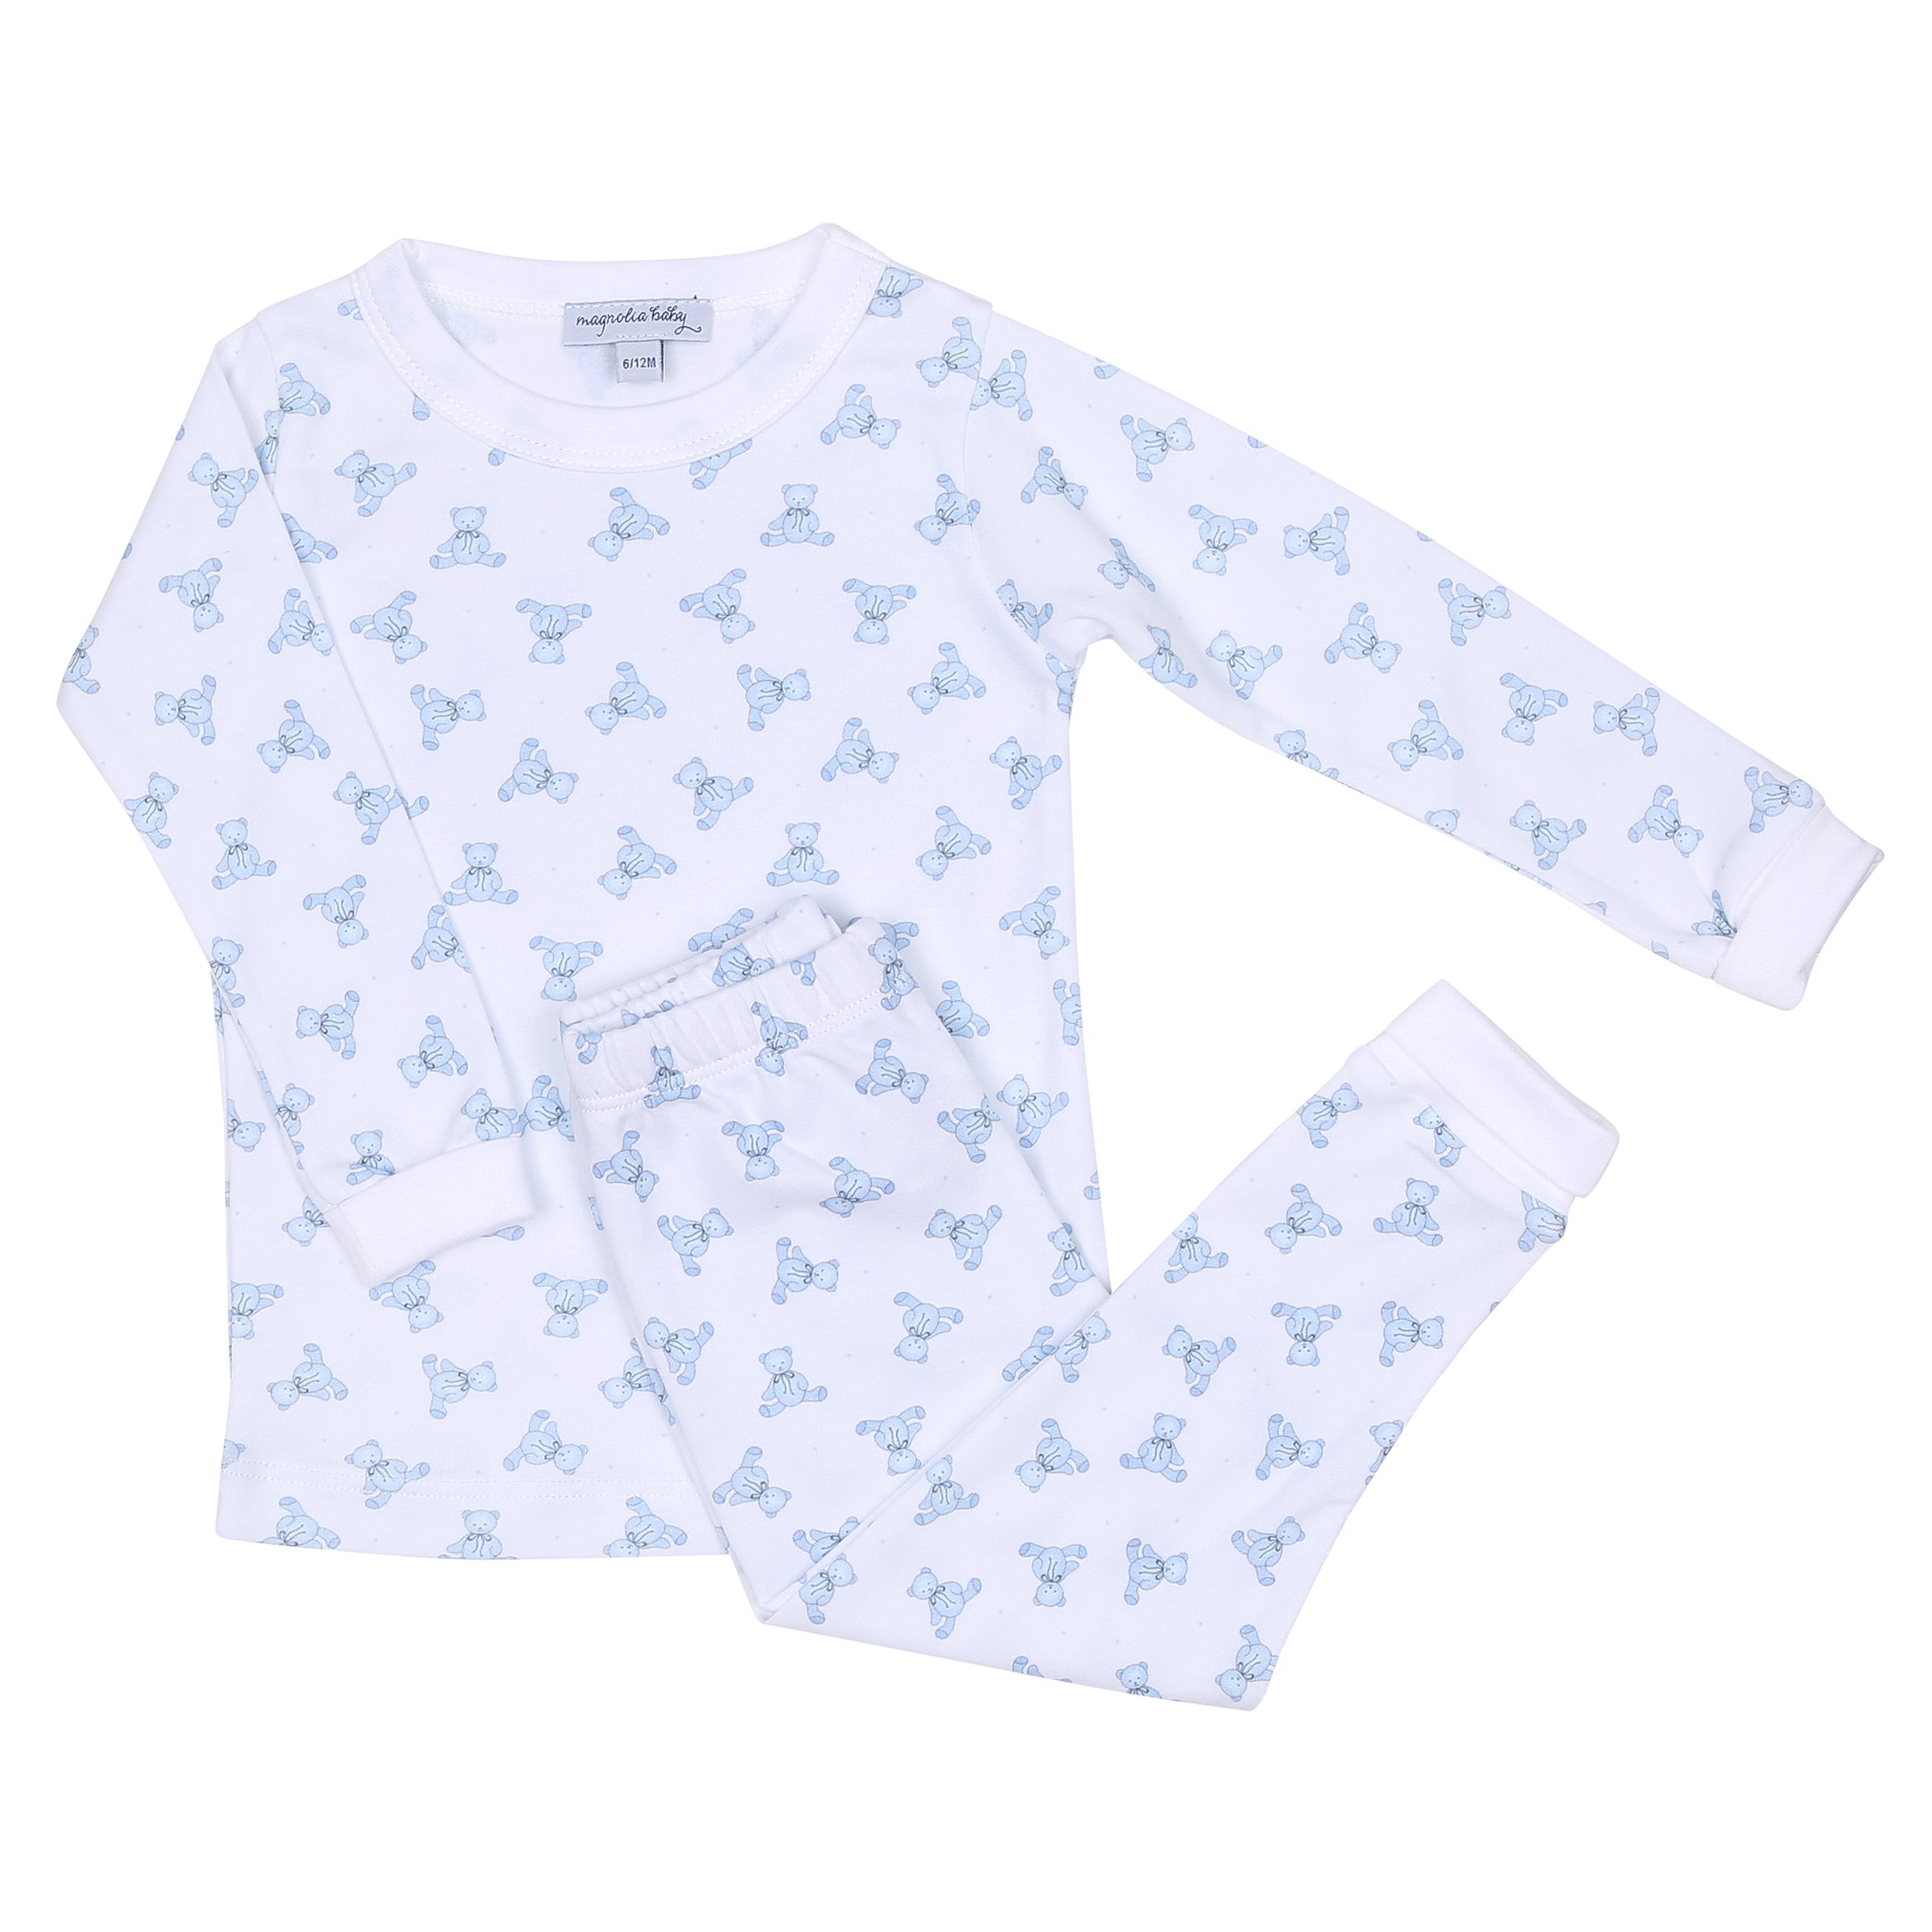 Pajamas for Kids - Magnolia Baby Blue Teddy Bears - Pima Cotton